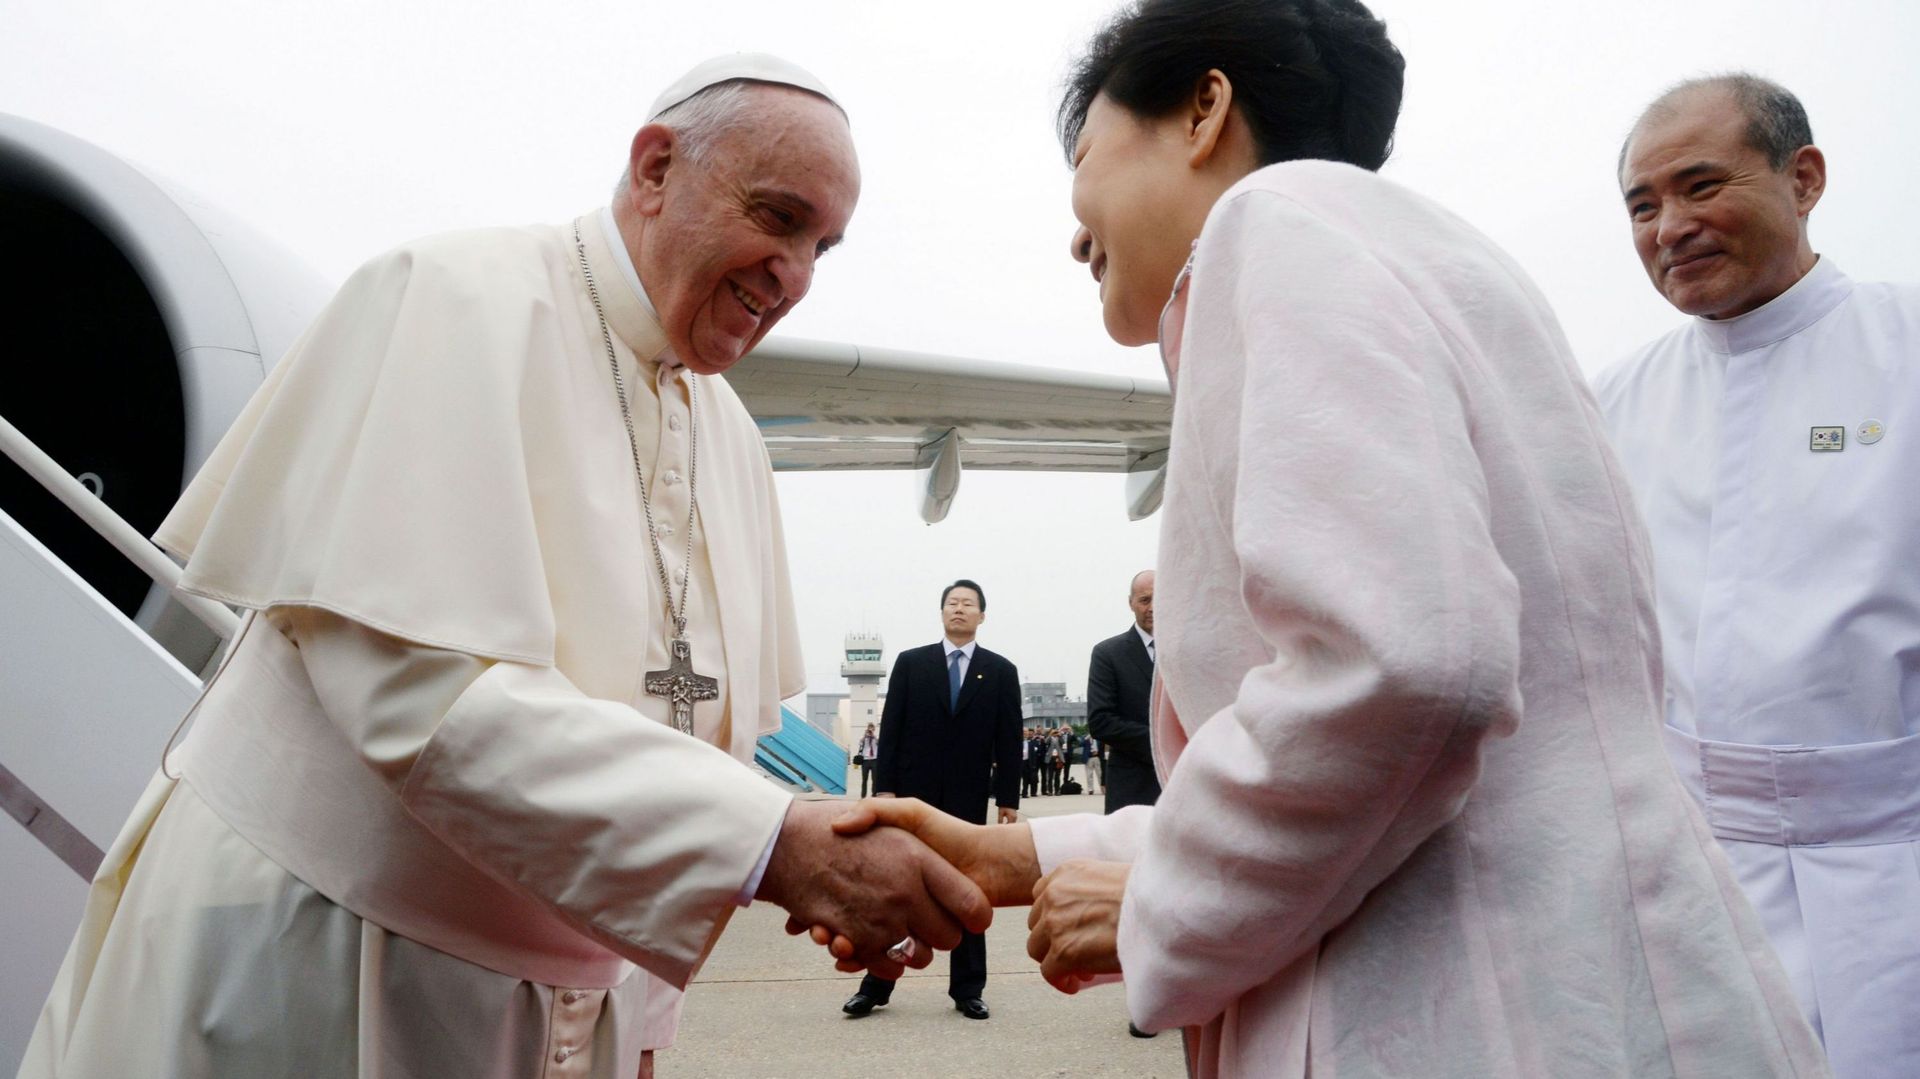 Le pape François en Corée du Sud, pays à l'offre religieuse multiple